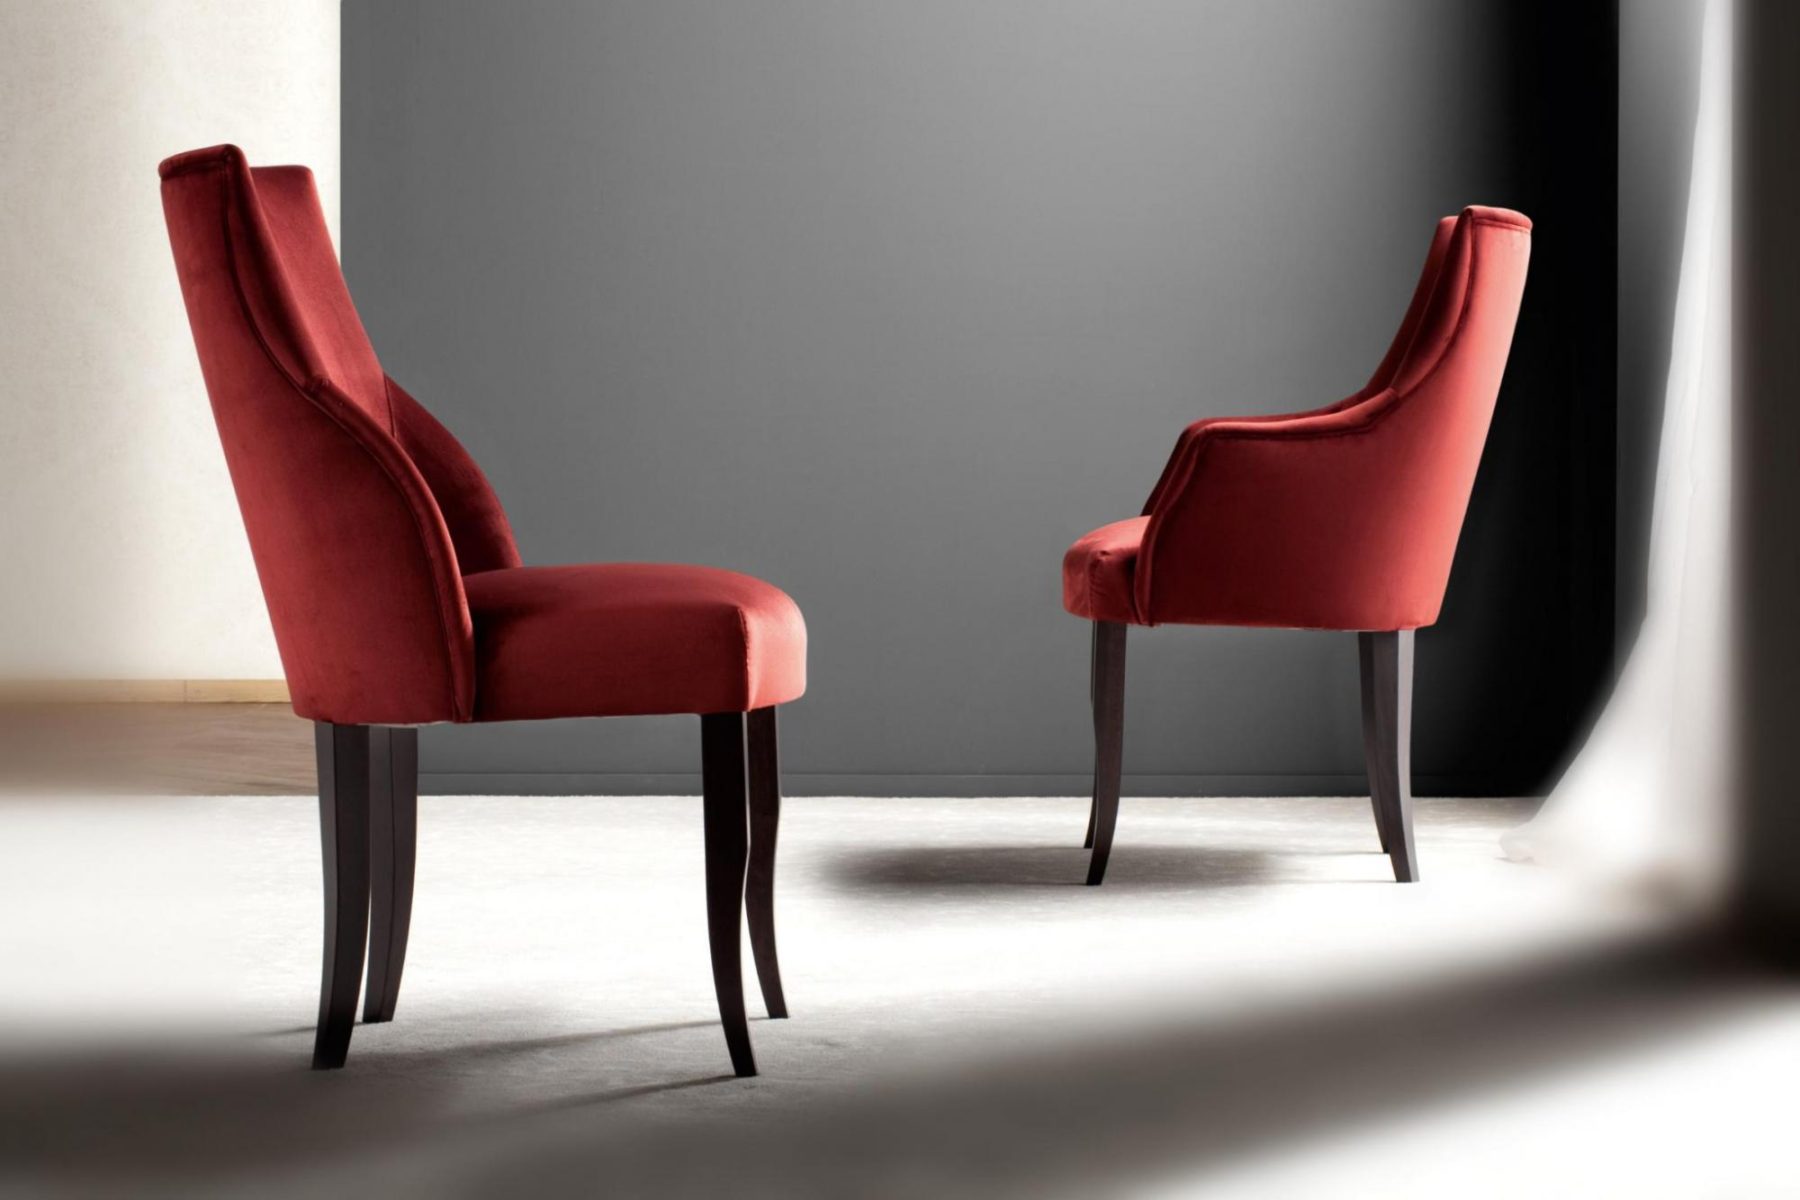 意大利家具costantinipietro的chairs-Sunset 餐椅 细节图